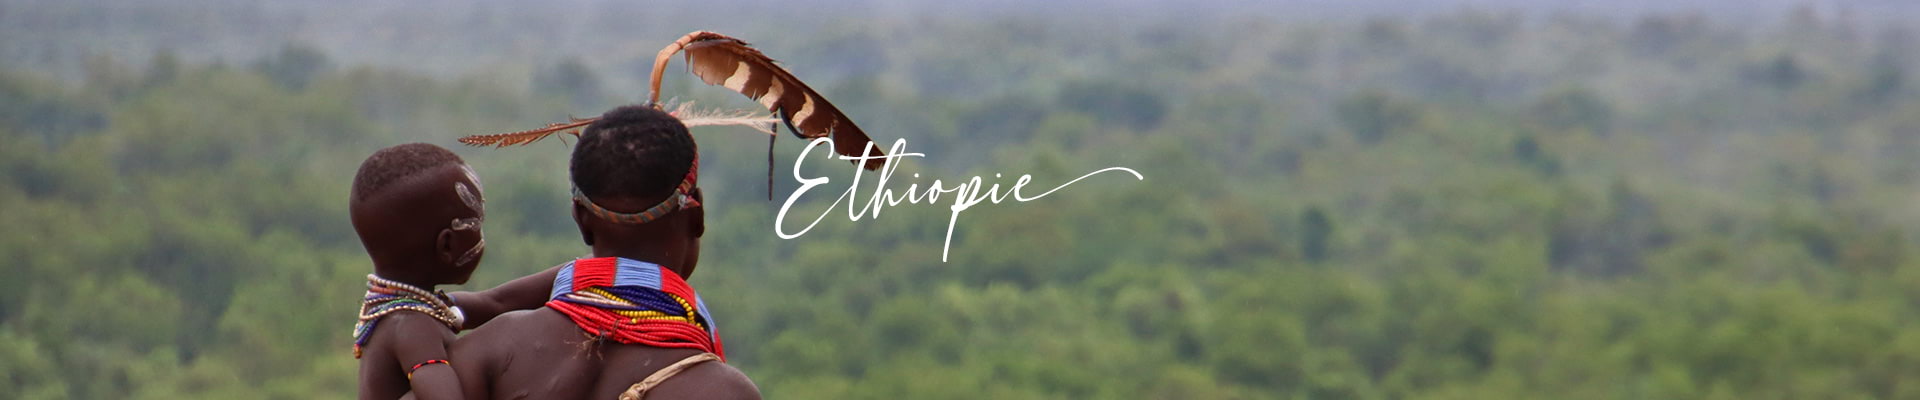 images/panos/desktop/ethiopie